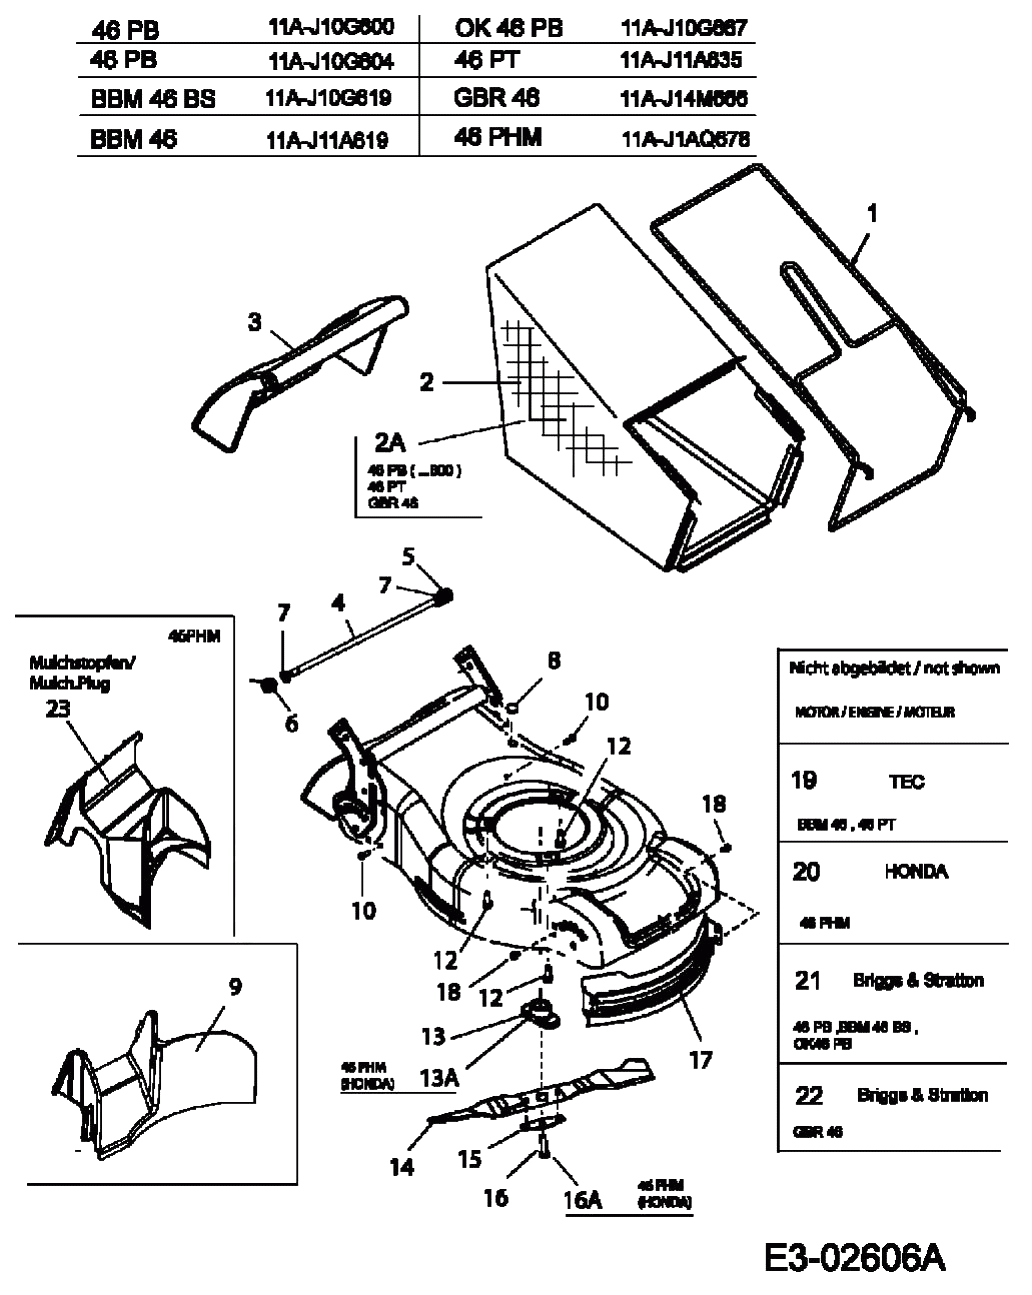 MTD Артикул 11A-J10G600 (год выпуска 2006). Травосборник, нож, двигатель, мульчирование